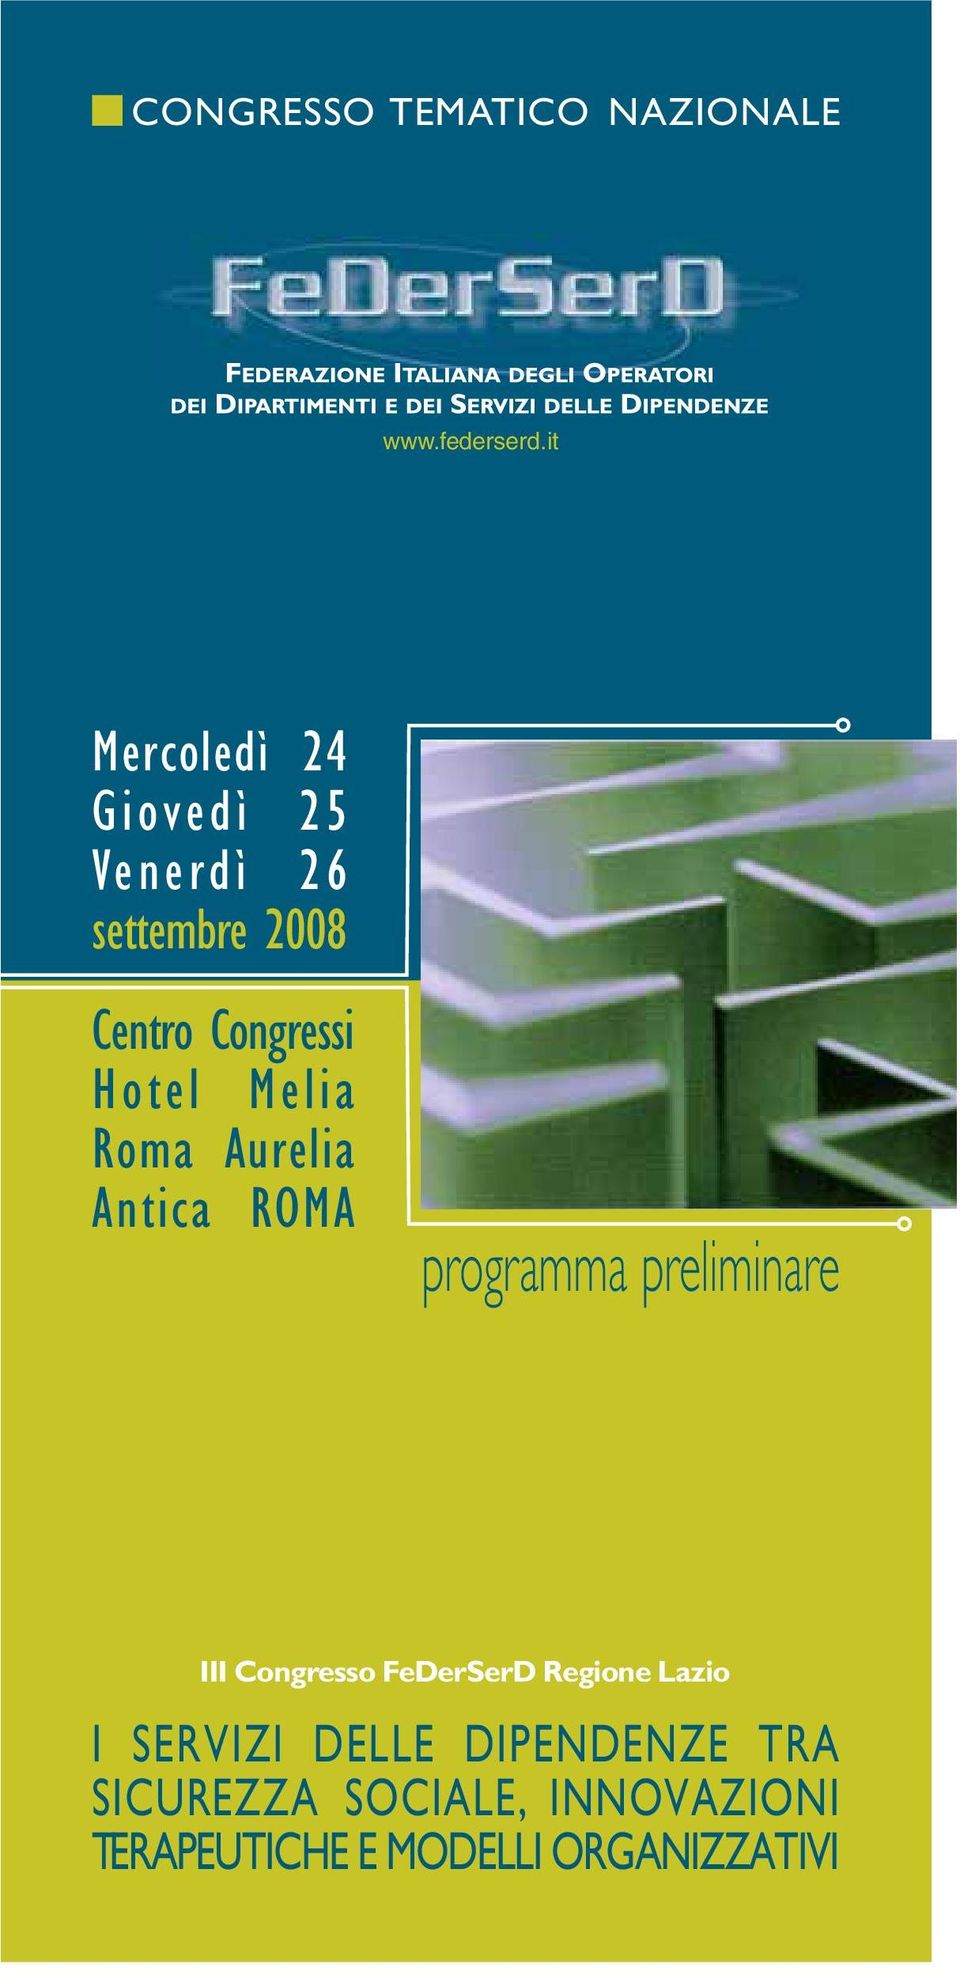 Hotel Melia Roma Aurelia Antica ROMA programma preliminare III Congresso